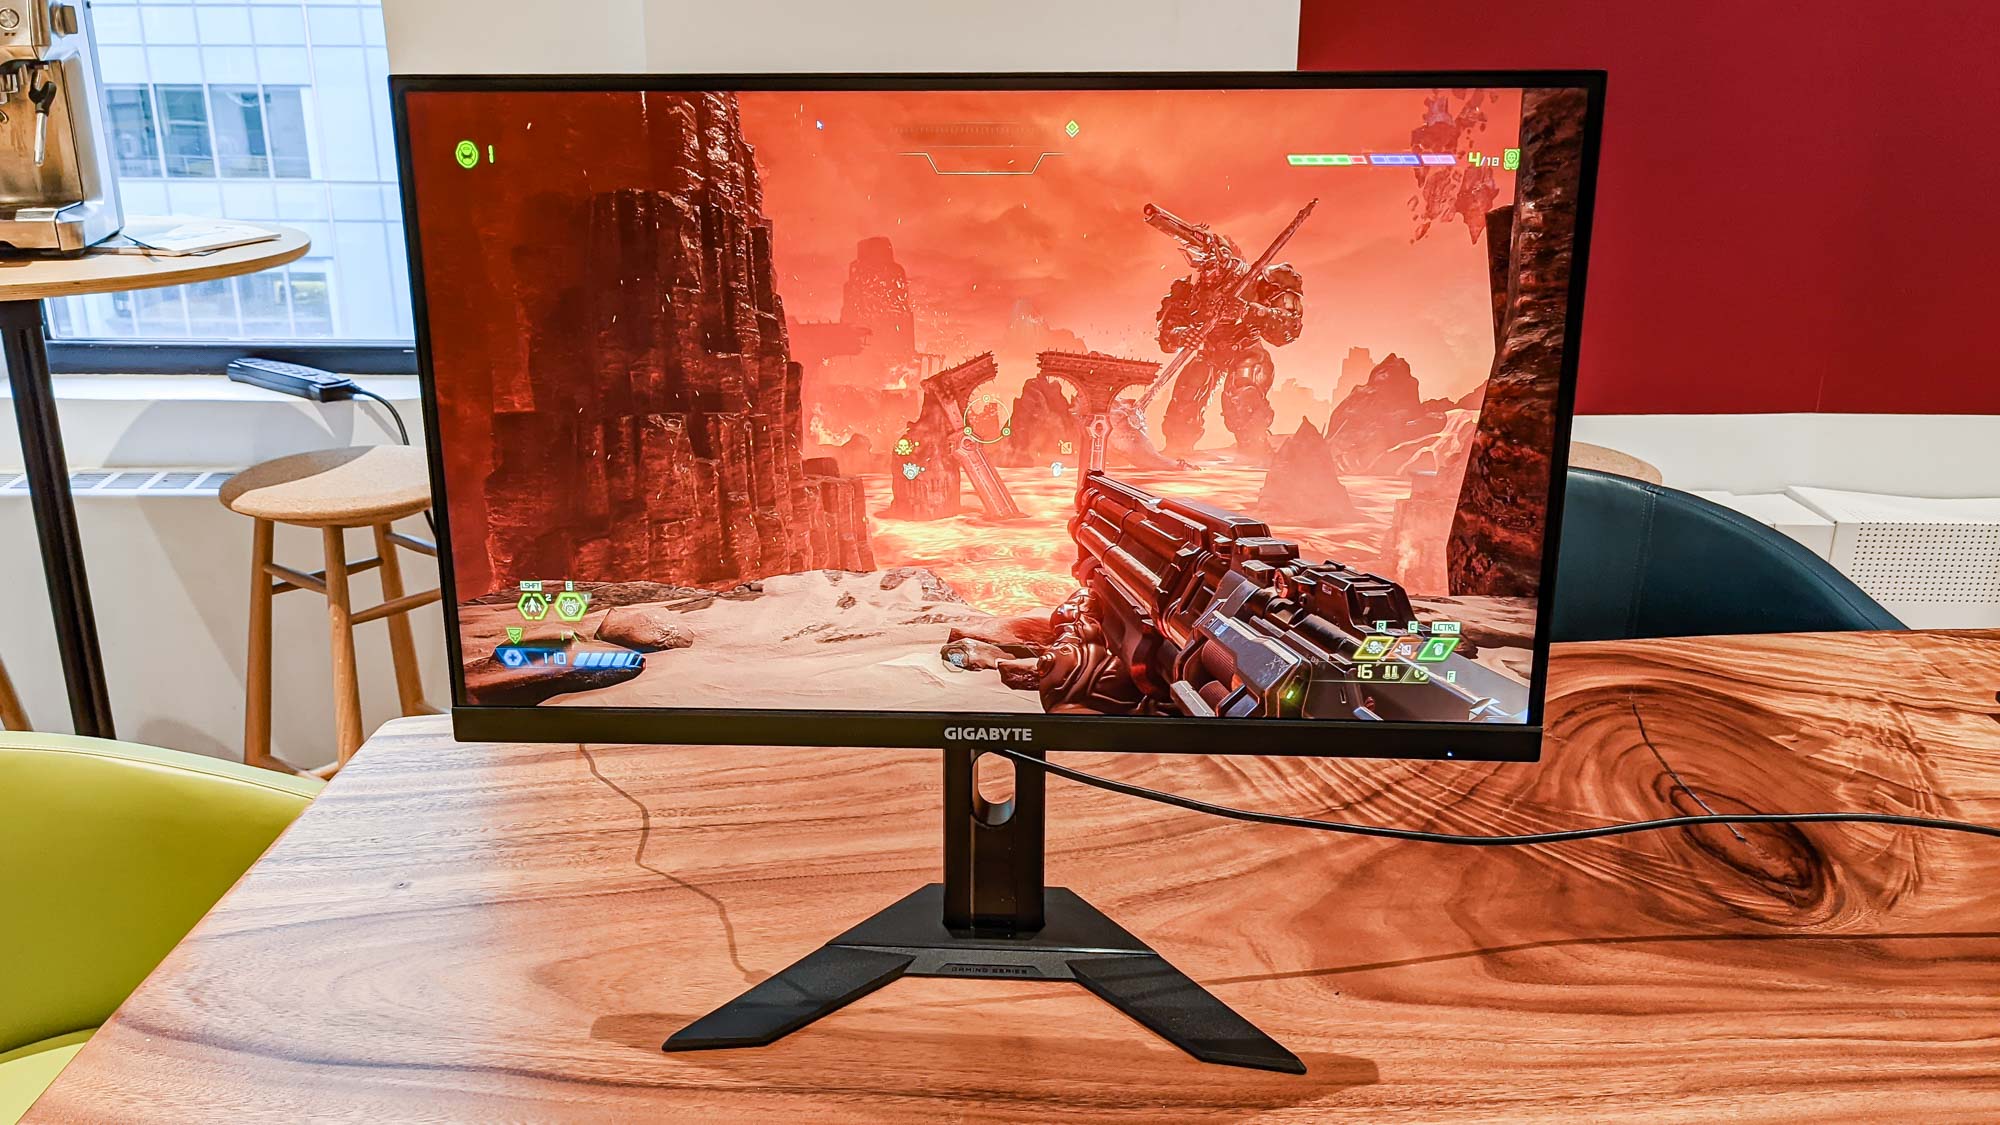 Gigabyte M27Q X Gaming Monitor on desk